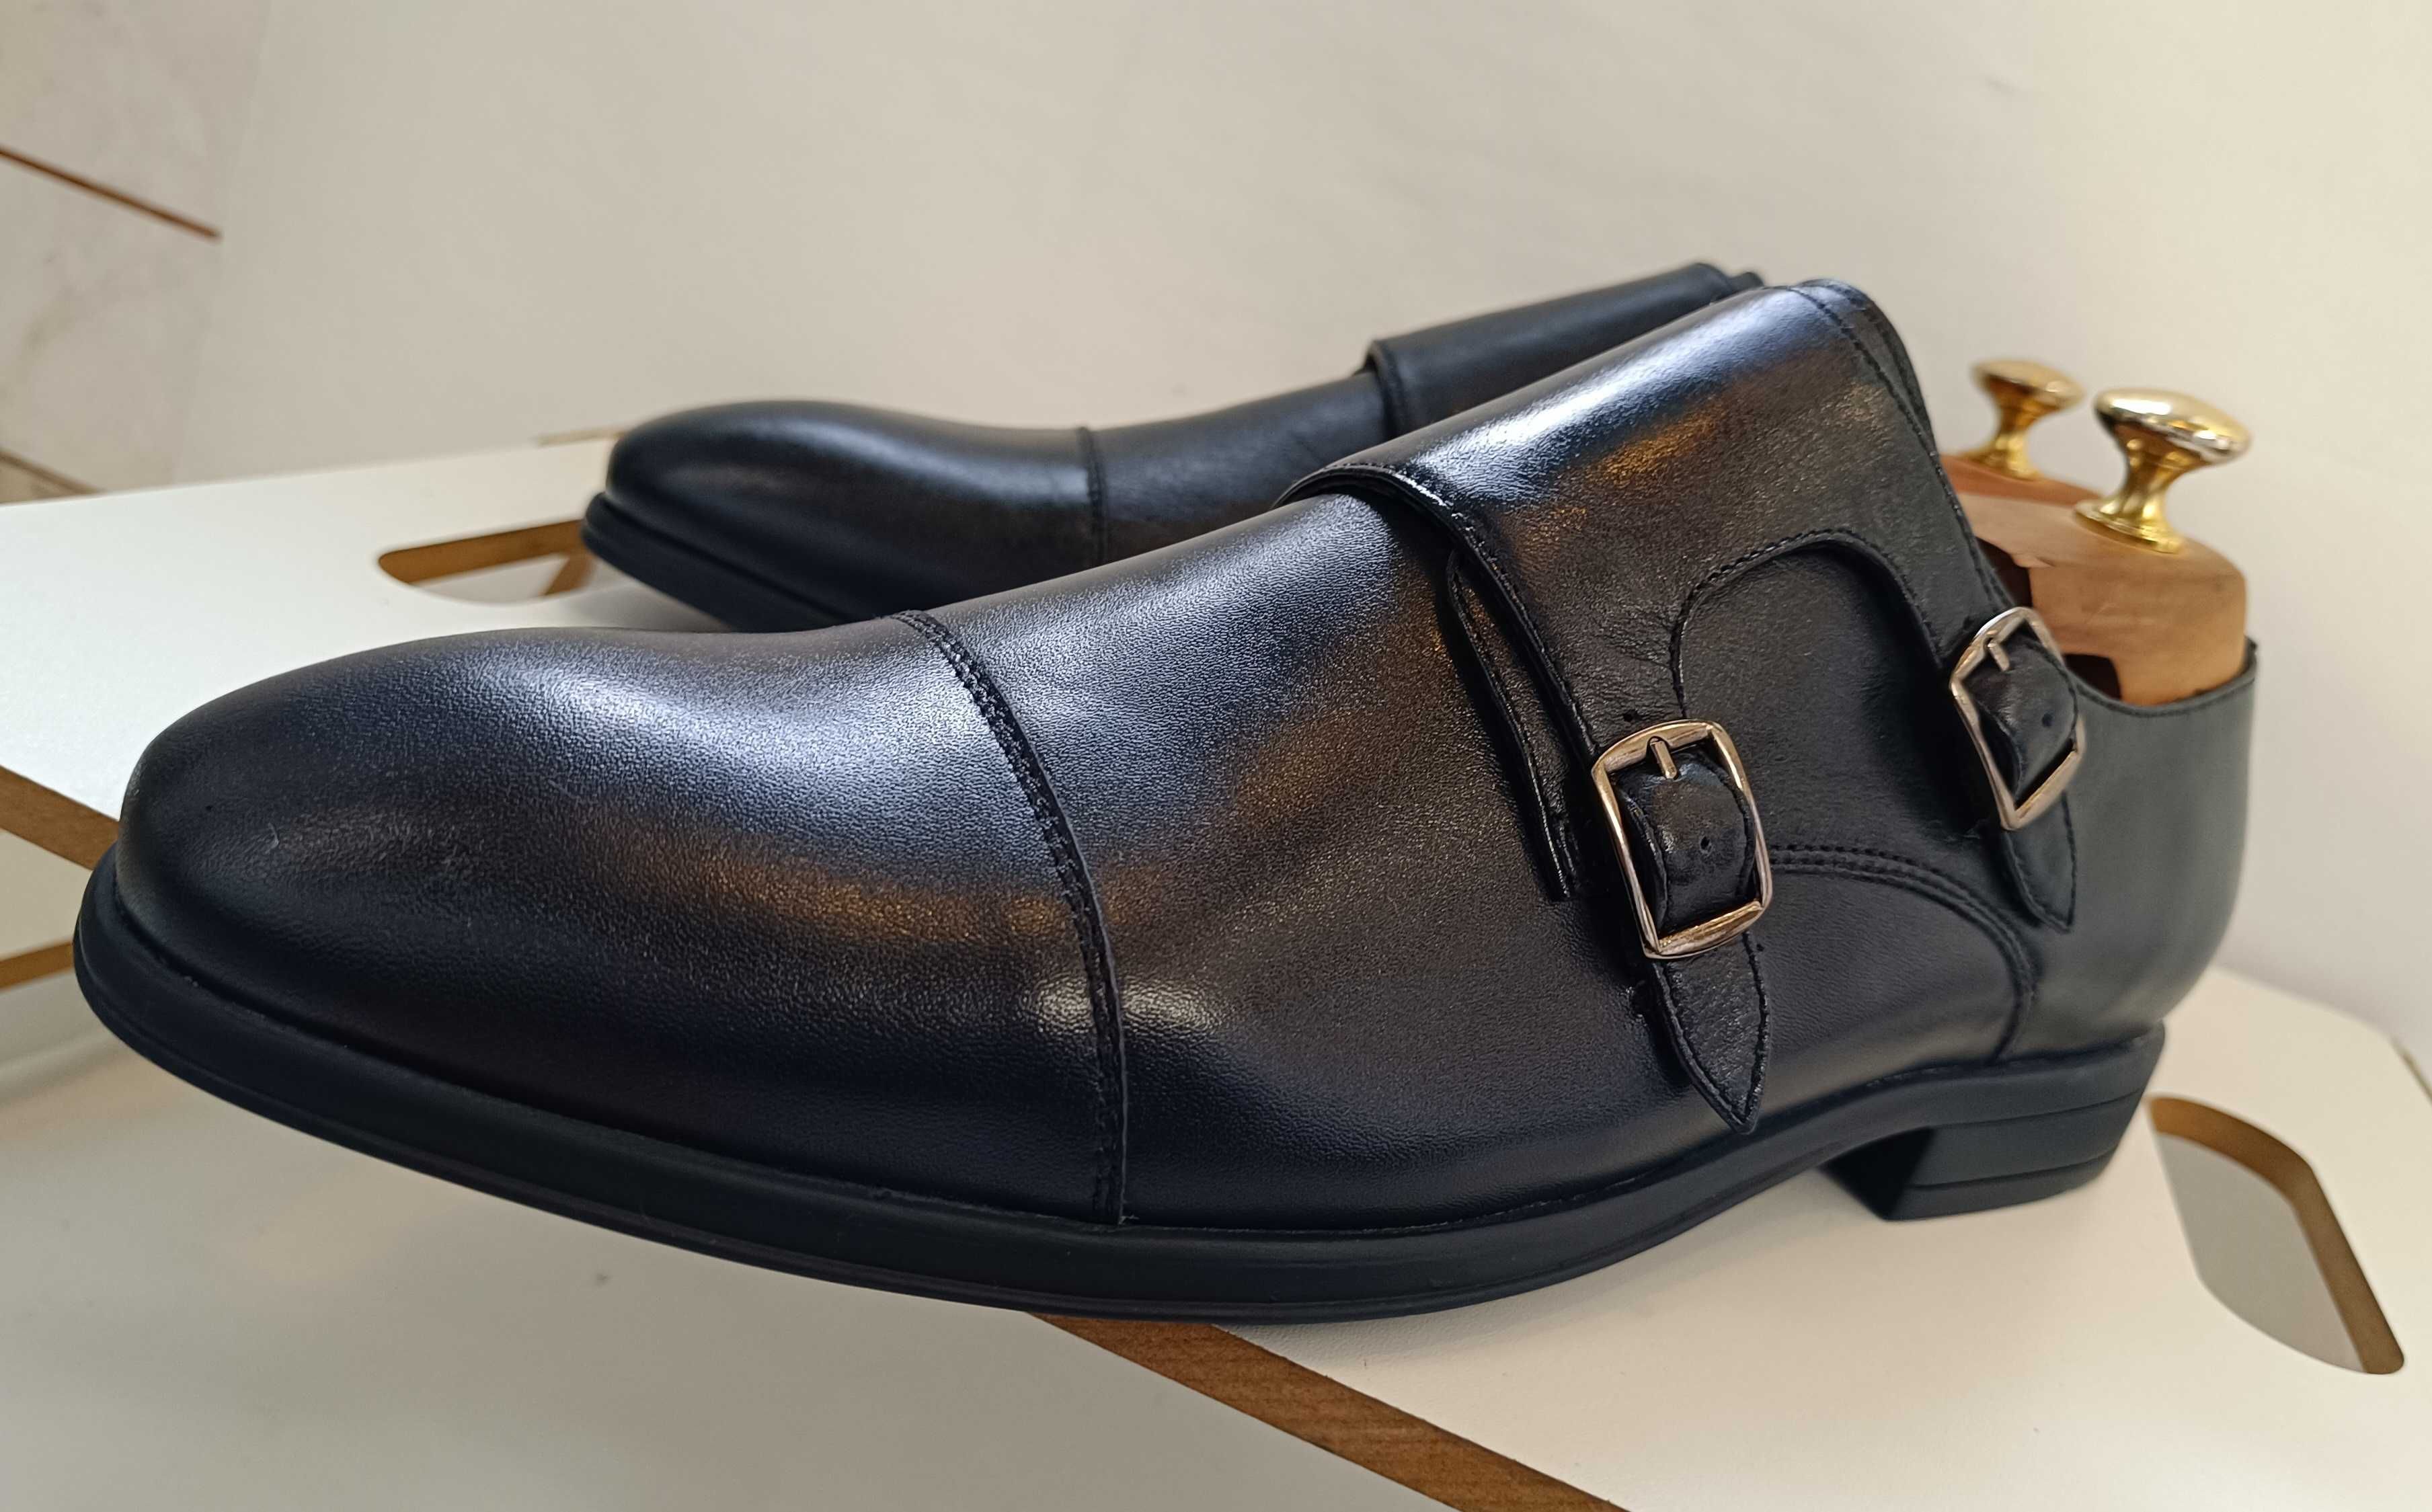 Pantofi double monk 43 42 premium Migato NOI piele naturala moale